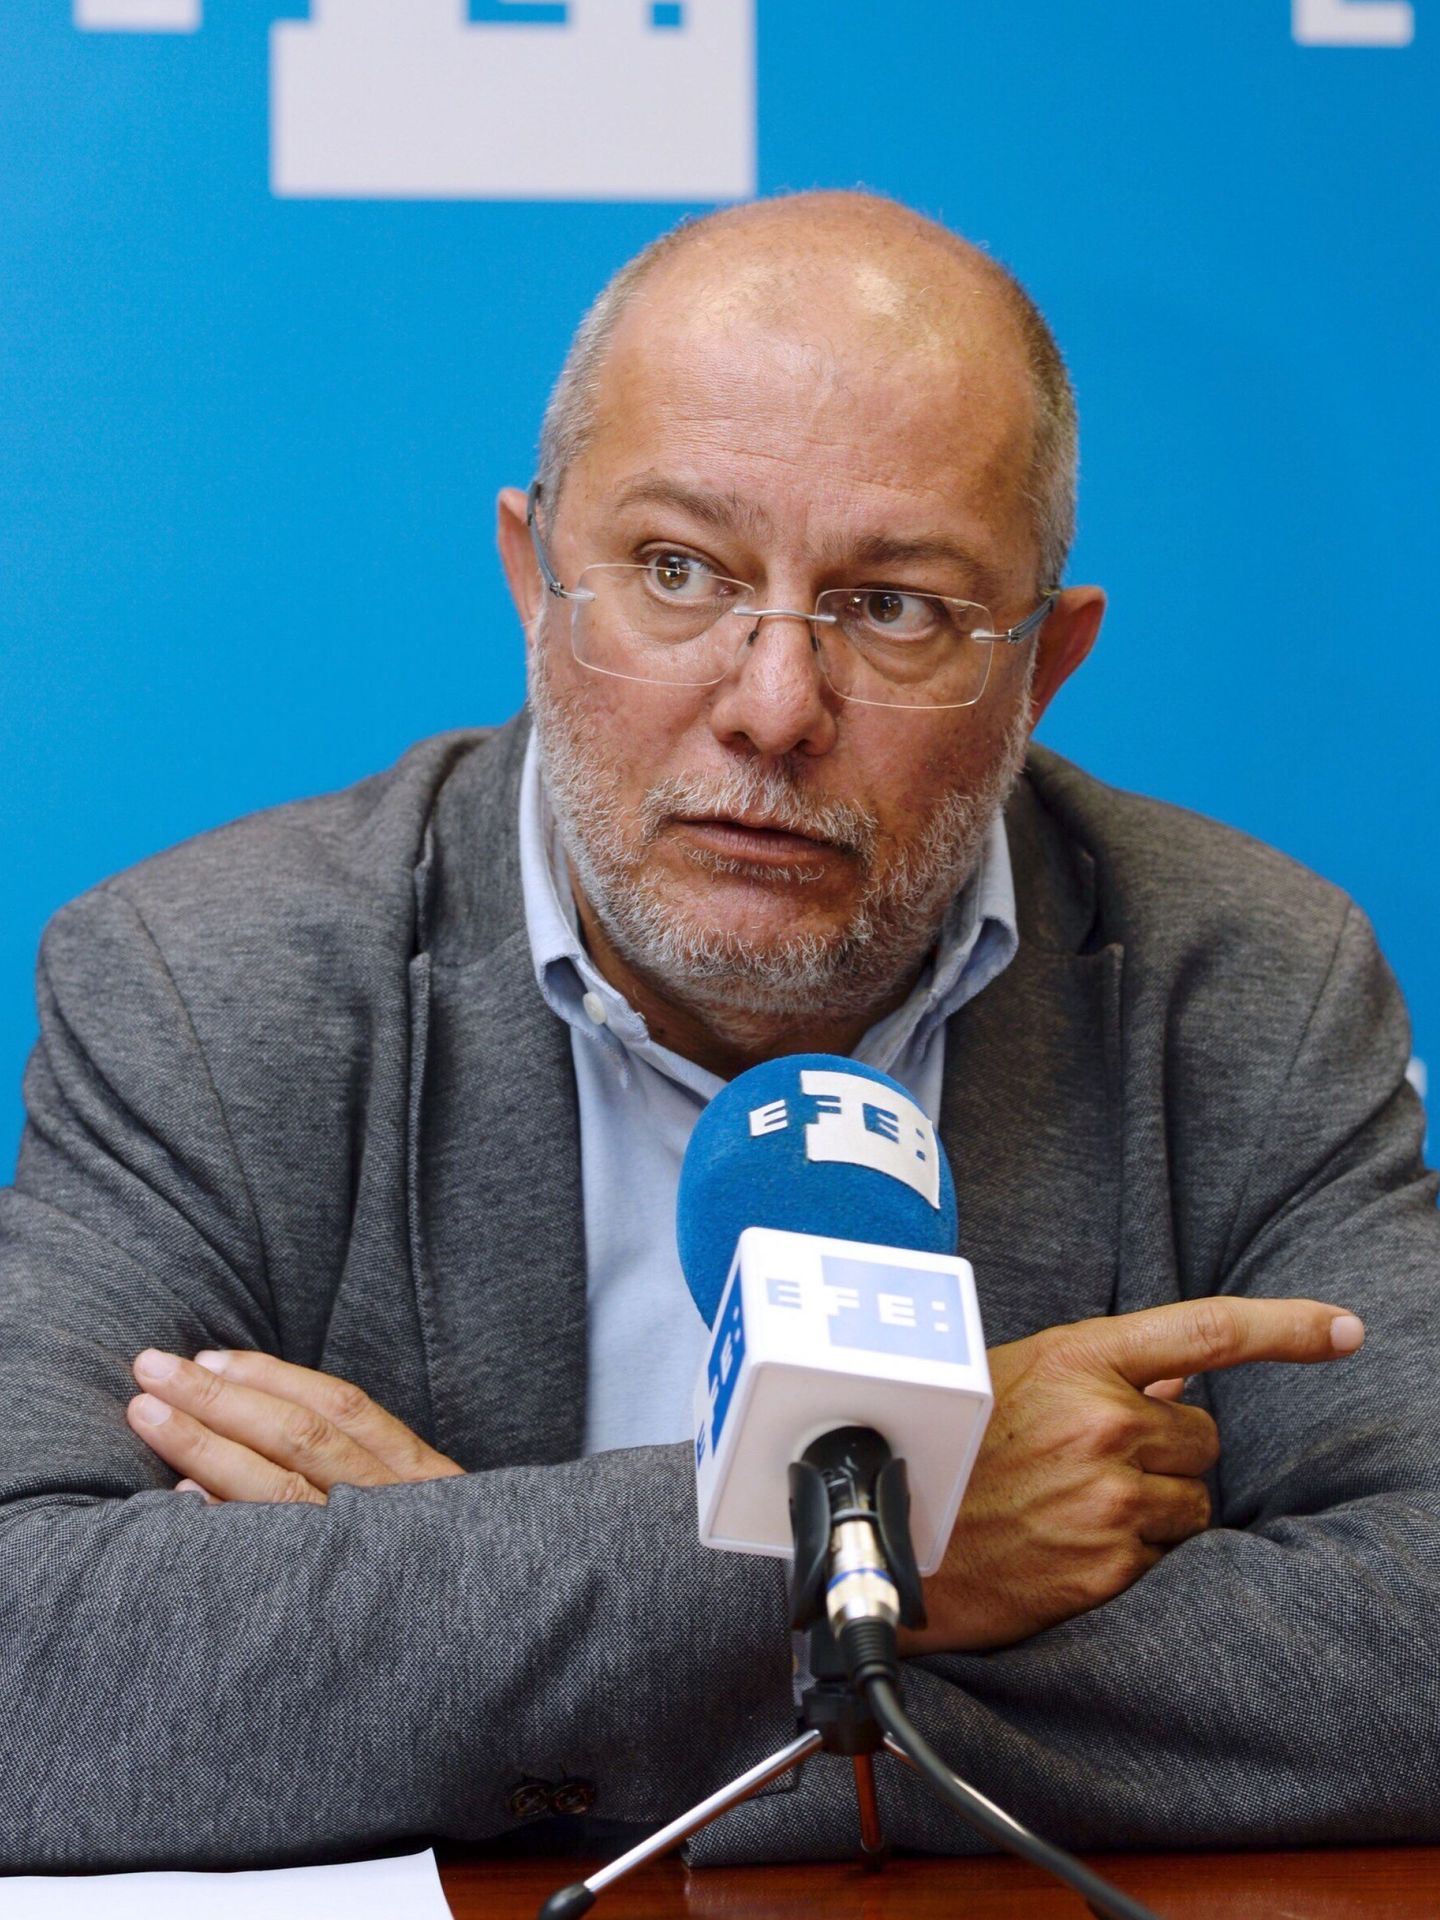 El candidato de Ciudadanos a la Presidencia de la Junta de Castilla y León, Francisco Igea, durante la entrevista. (EFE)